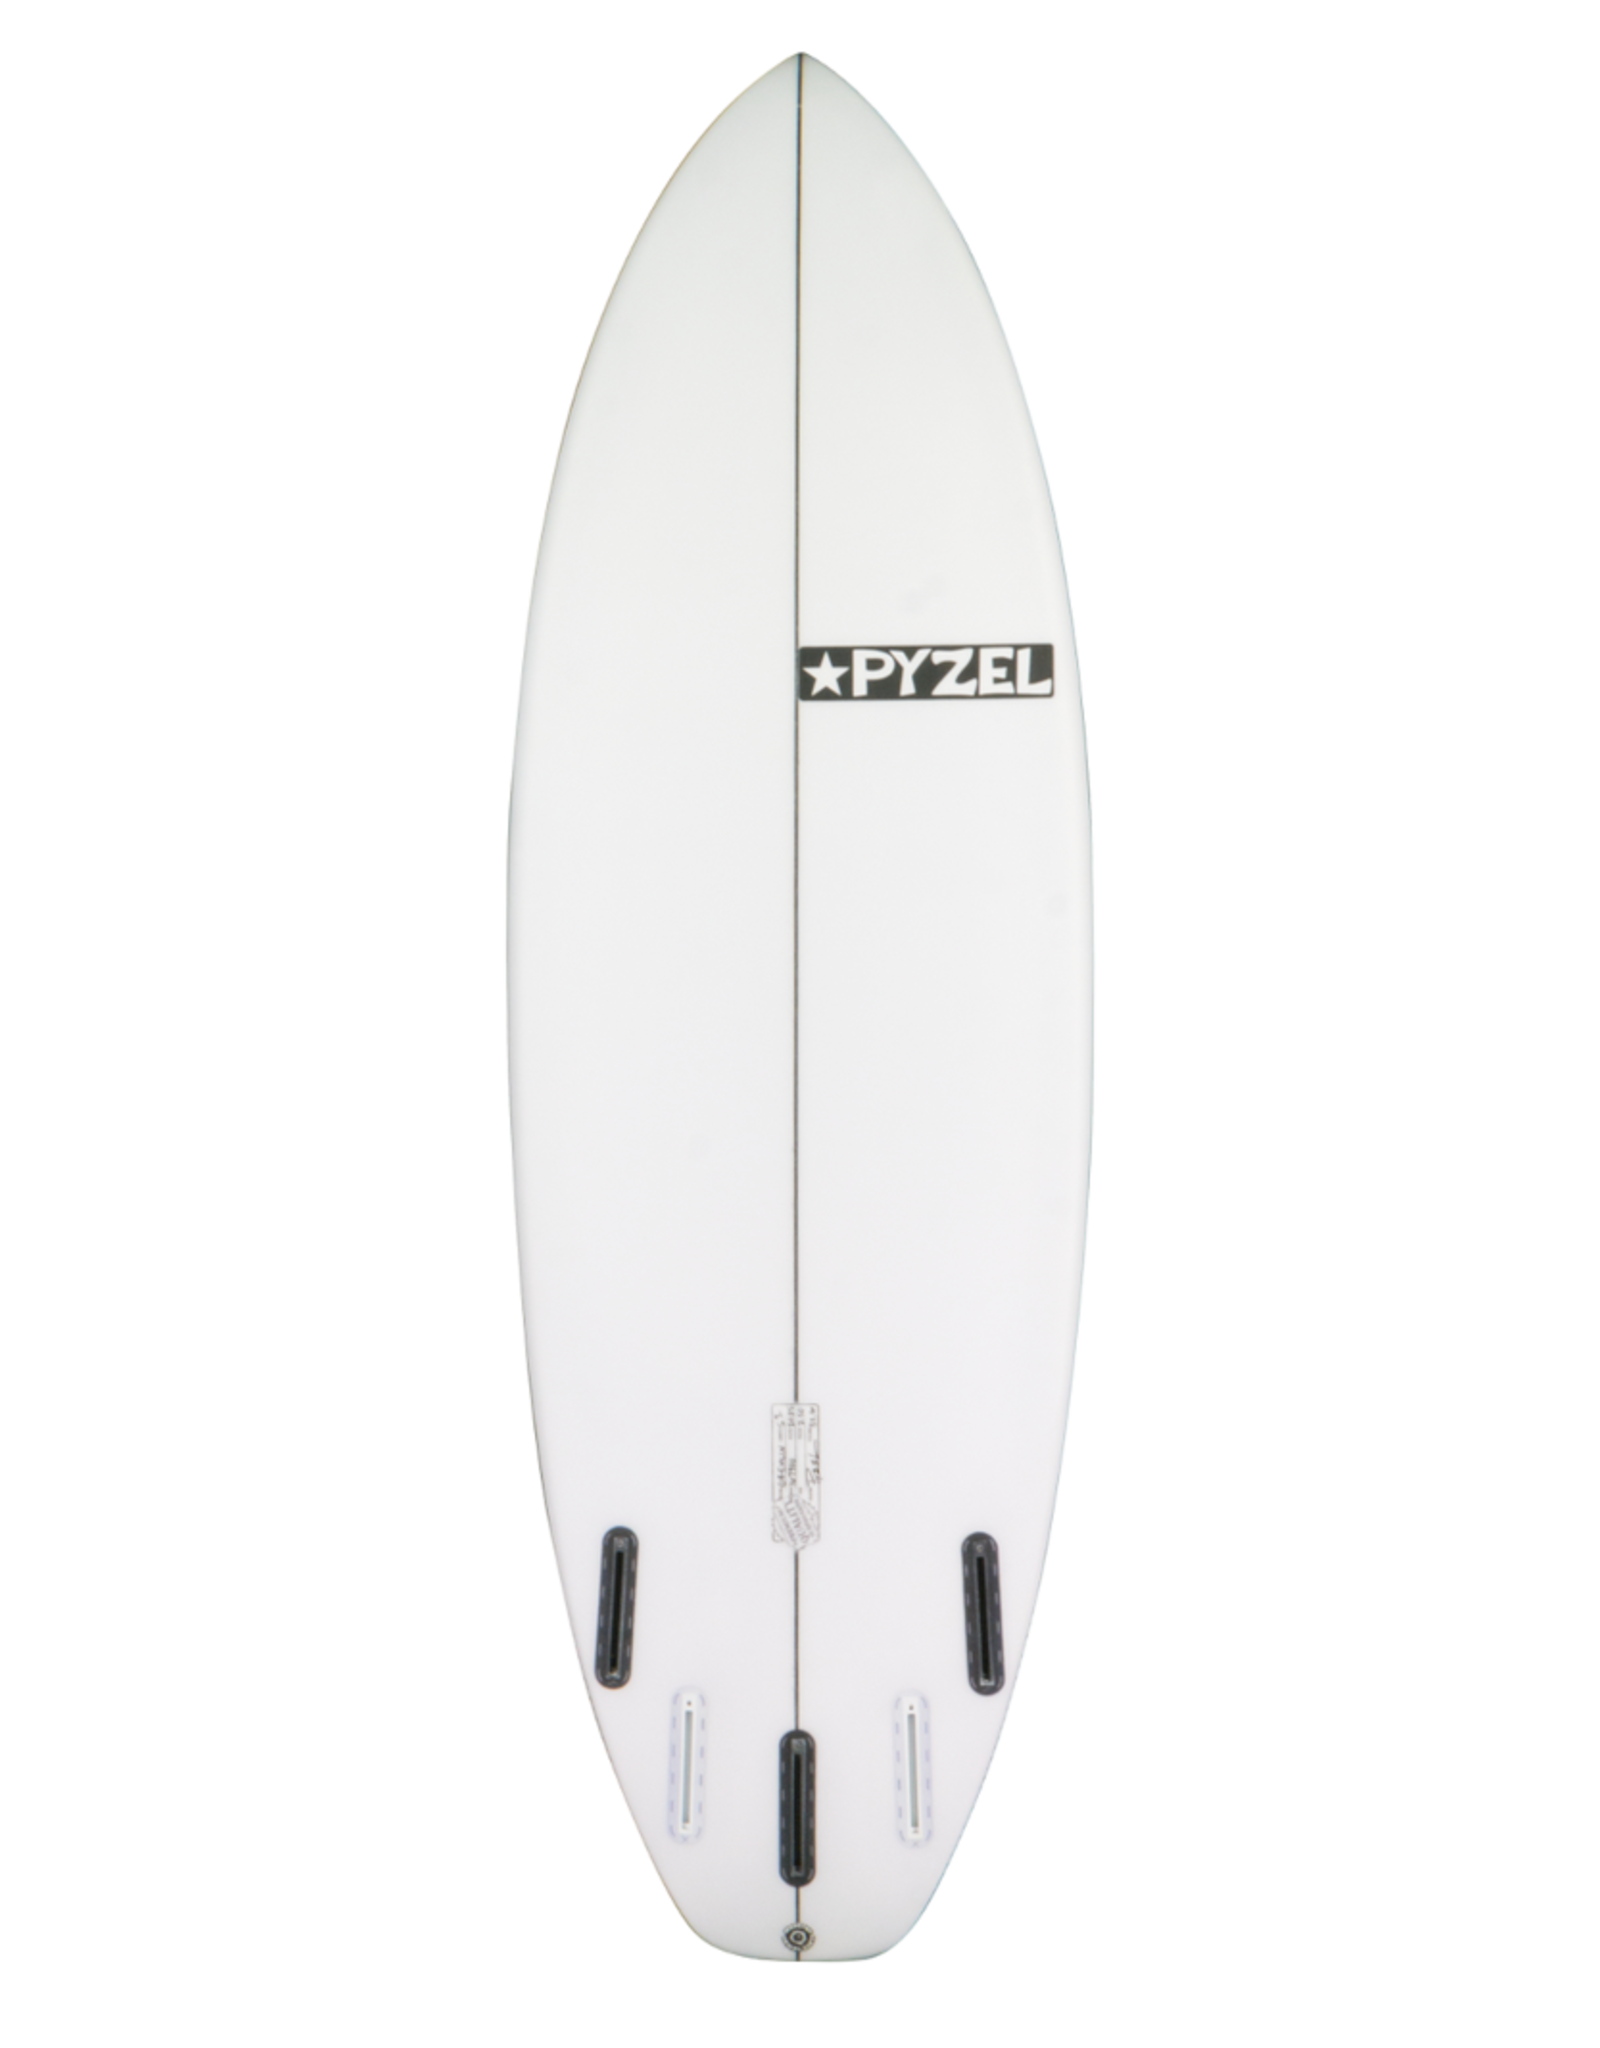 Pyzel Surfboards Pyzel 6'2" Gremlin PU FCS 2 5 Fins